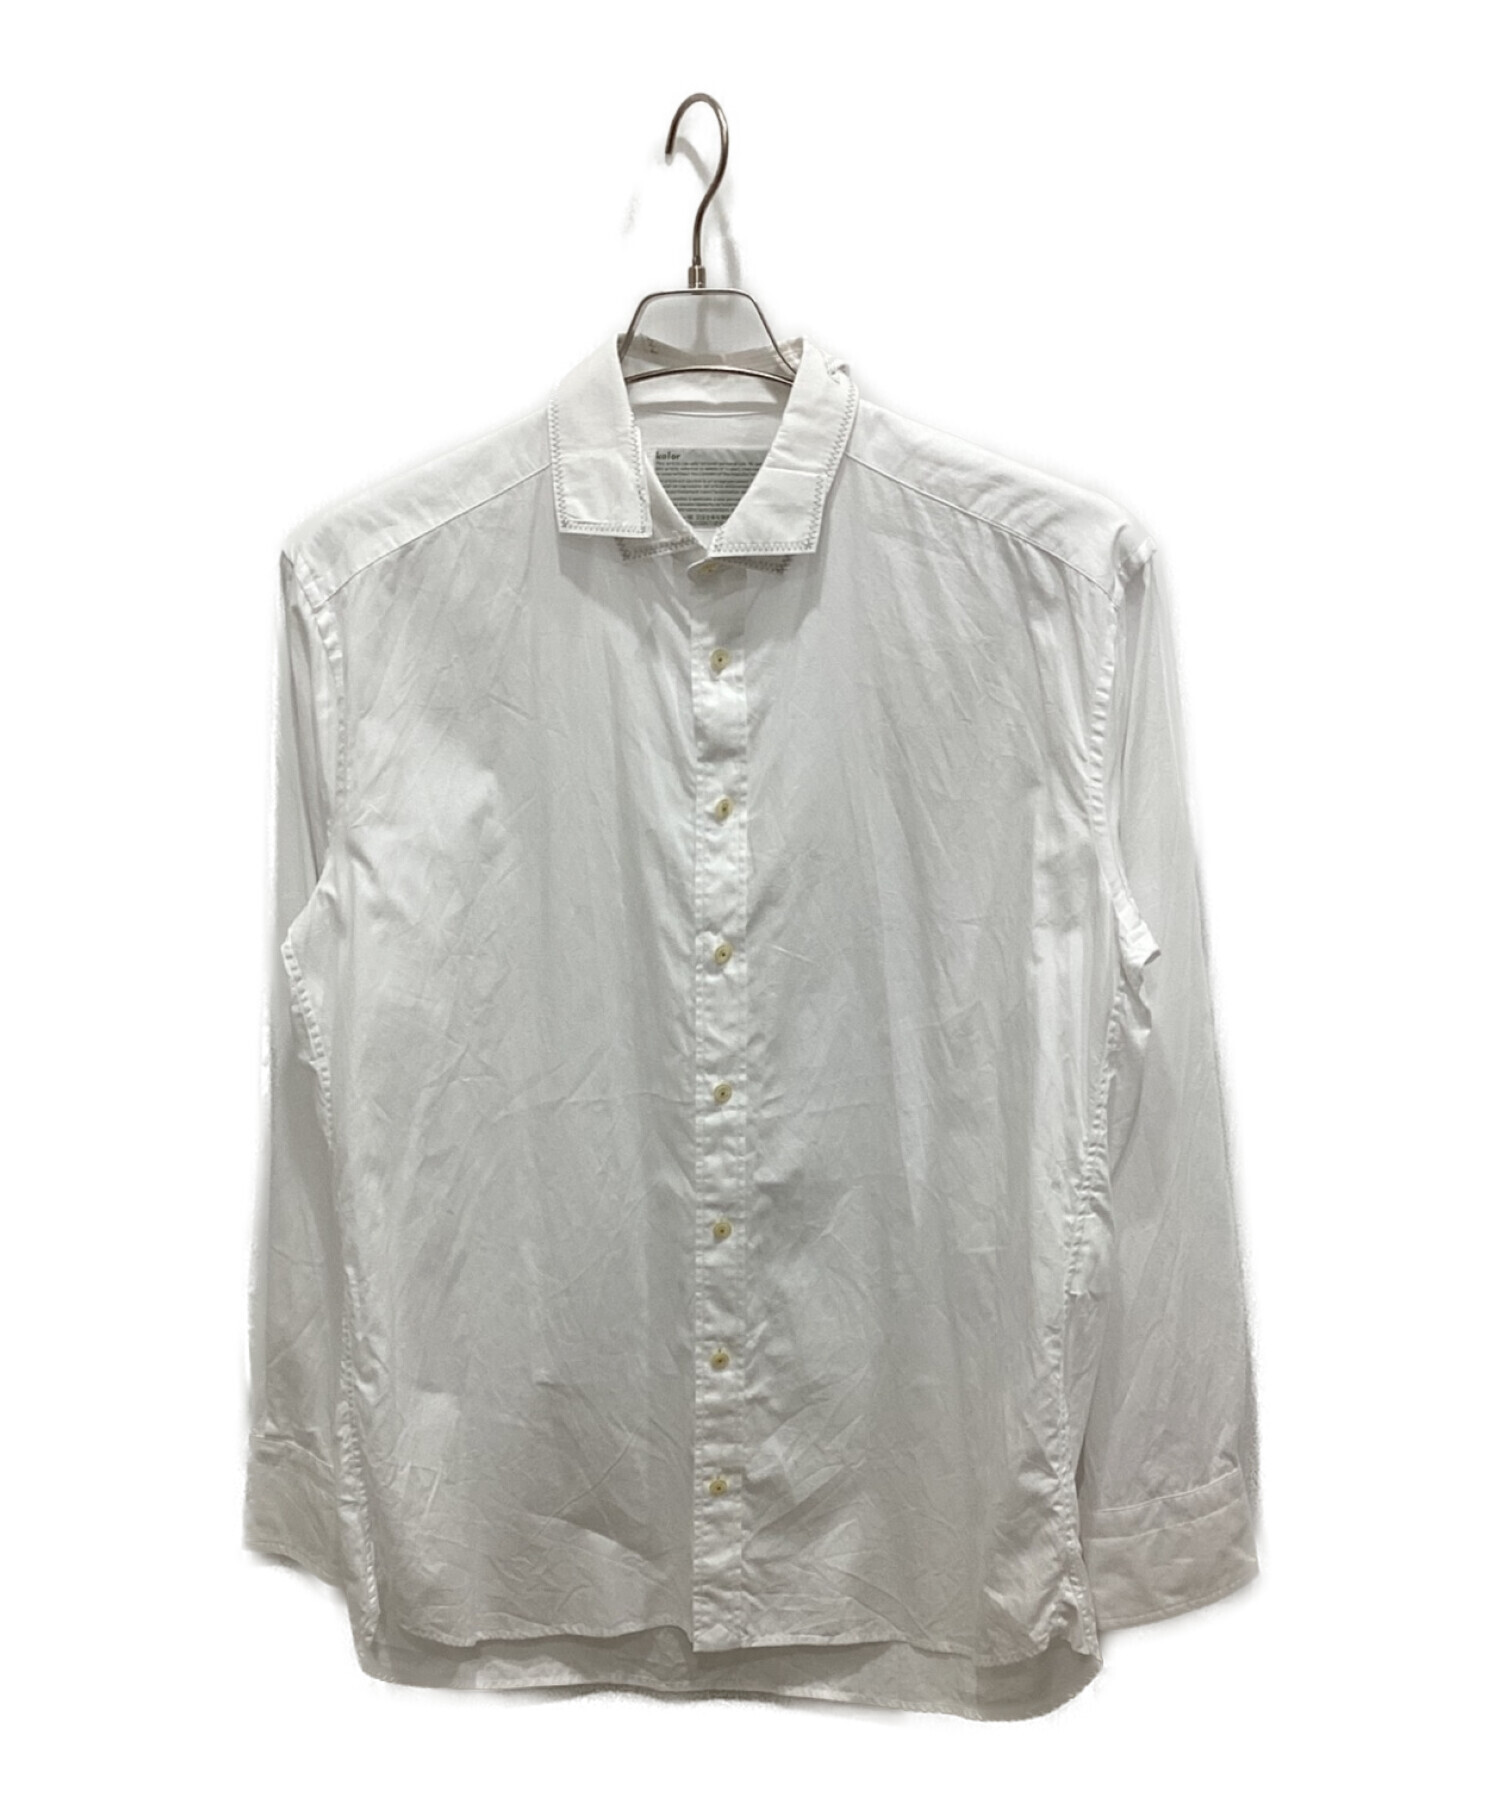 中古・古着通販】KOLOR (カラー) ツギハギシャツ ホワイト サイズ:2